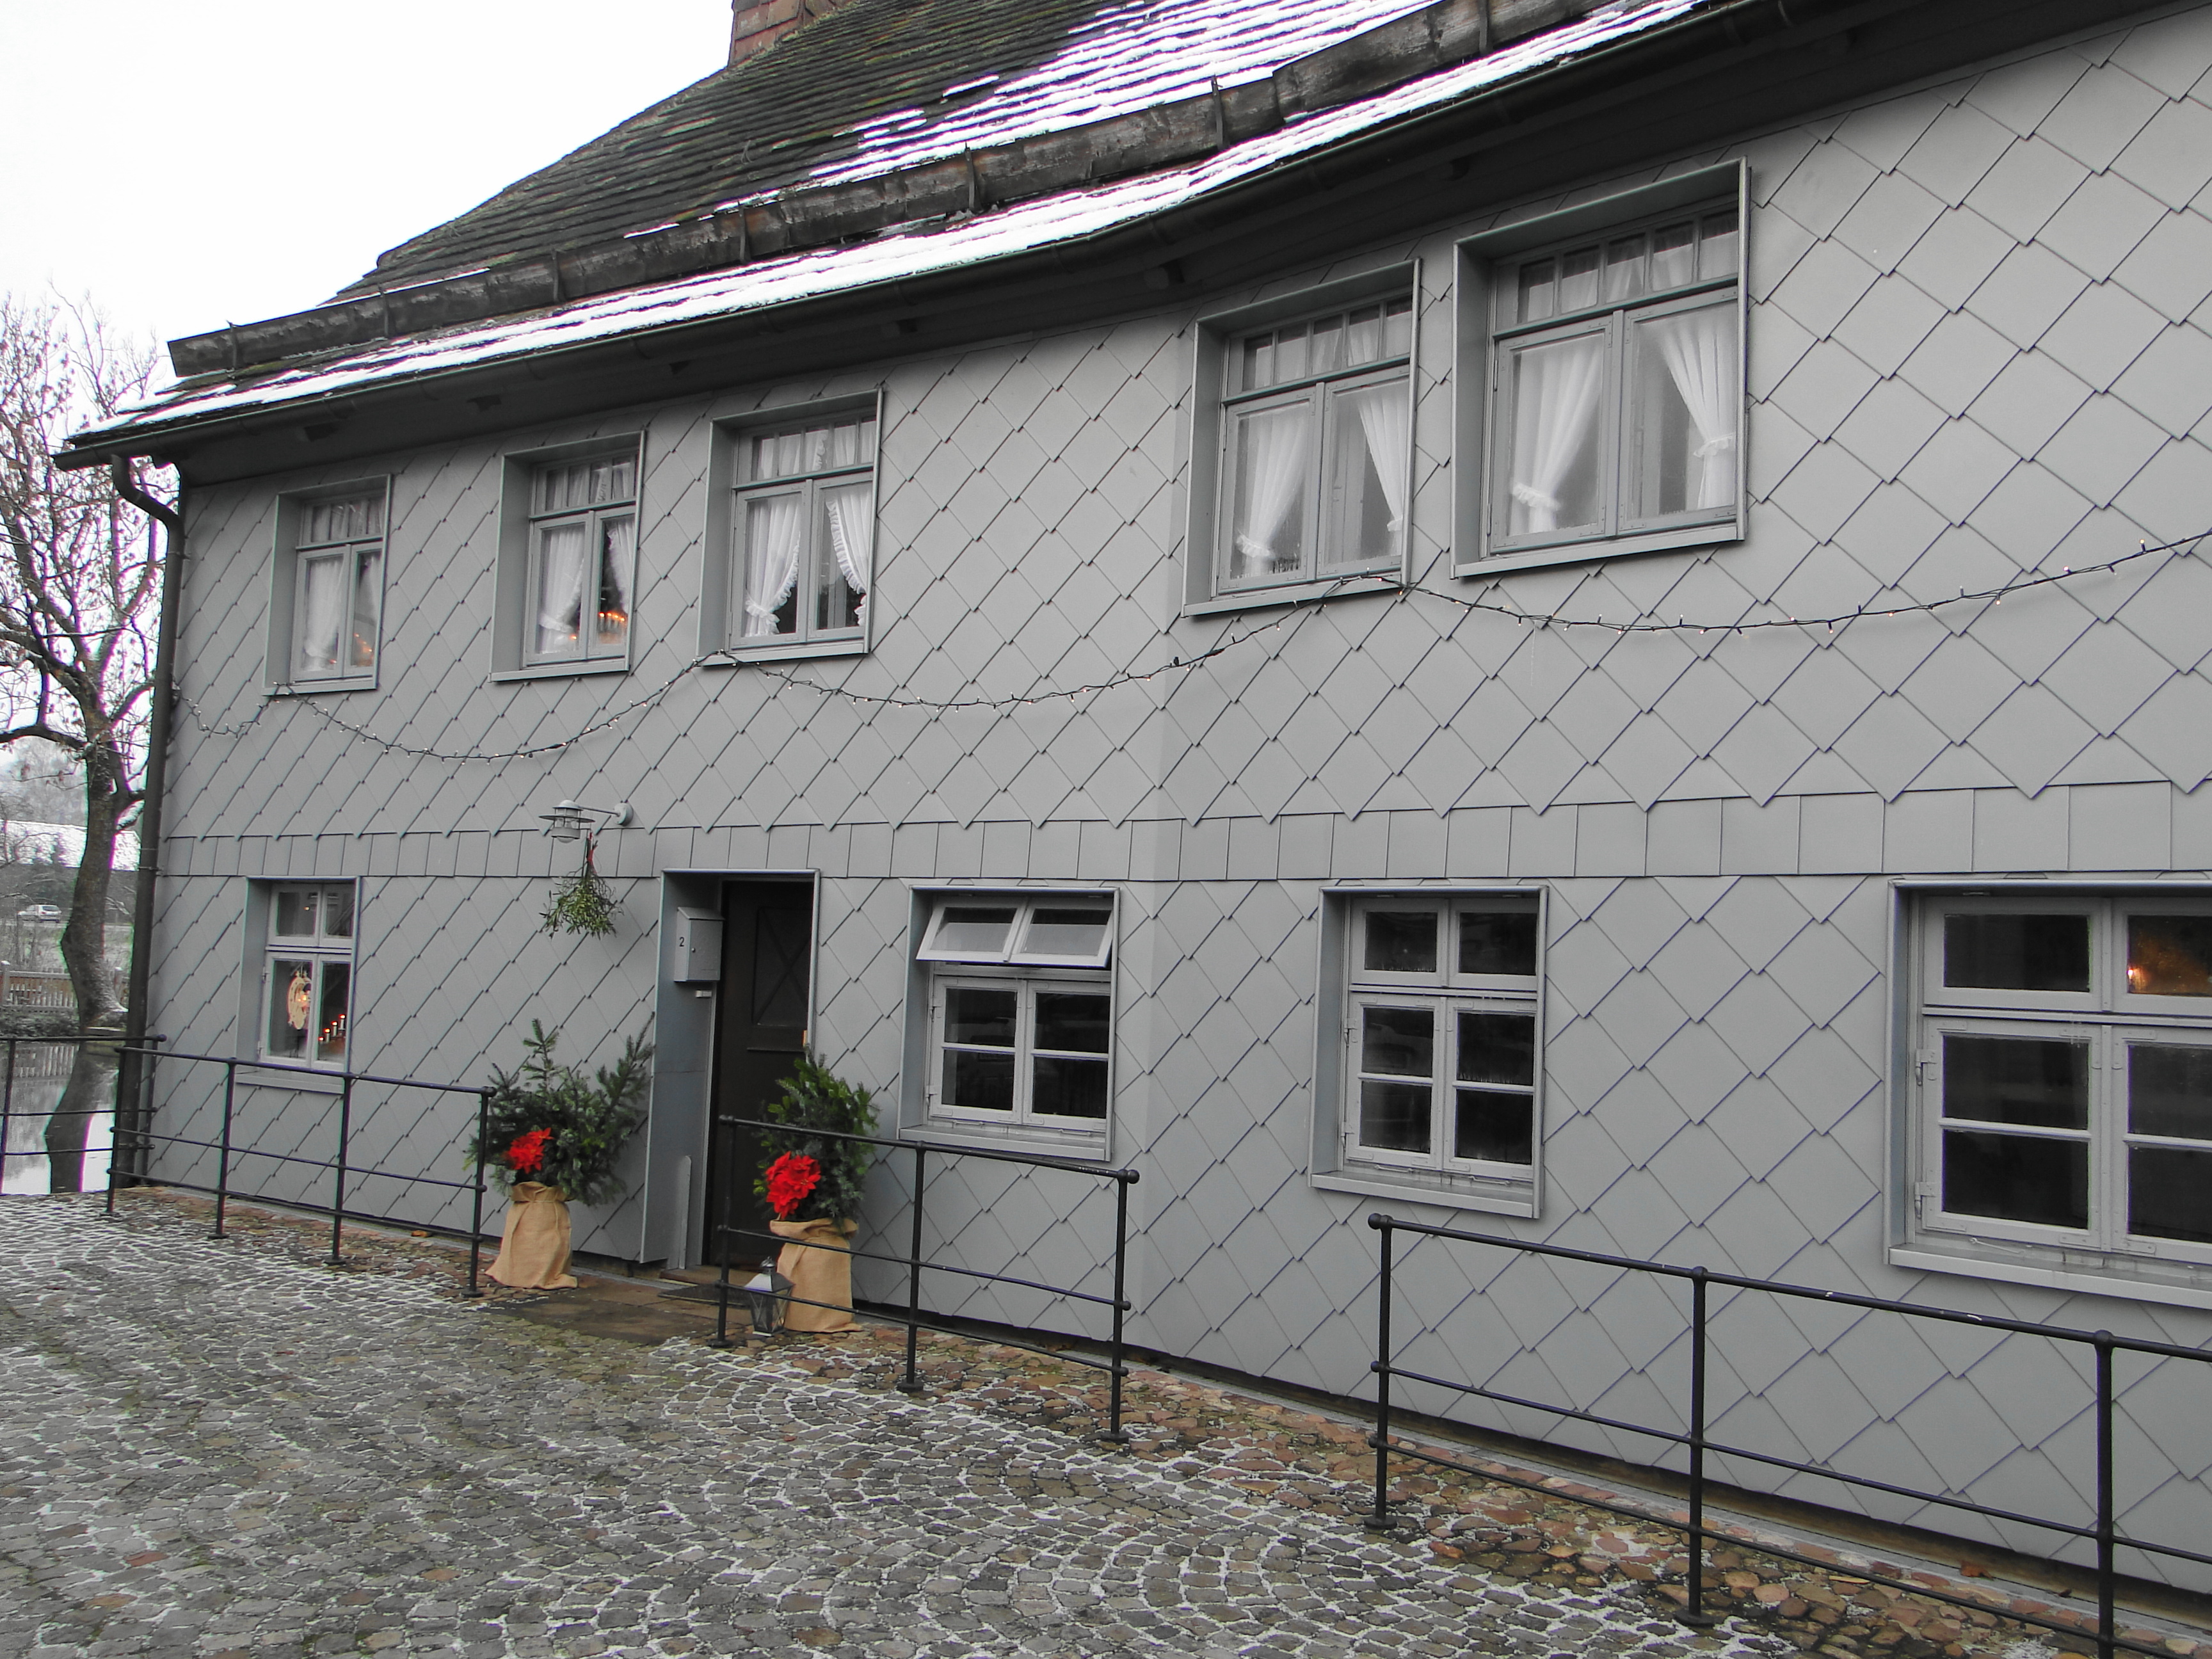 Historisches Technikmuseum Blankschmiede Neimke in Dassel,
Haus und Eingang